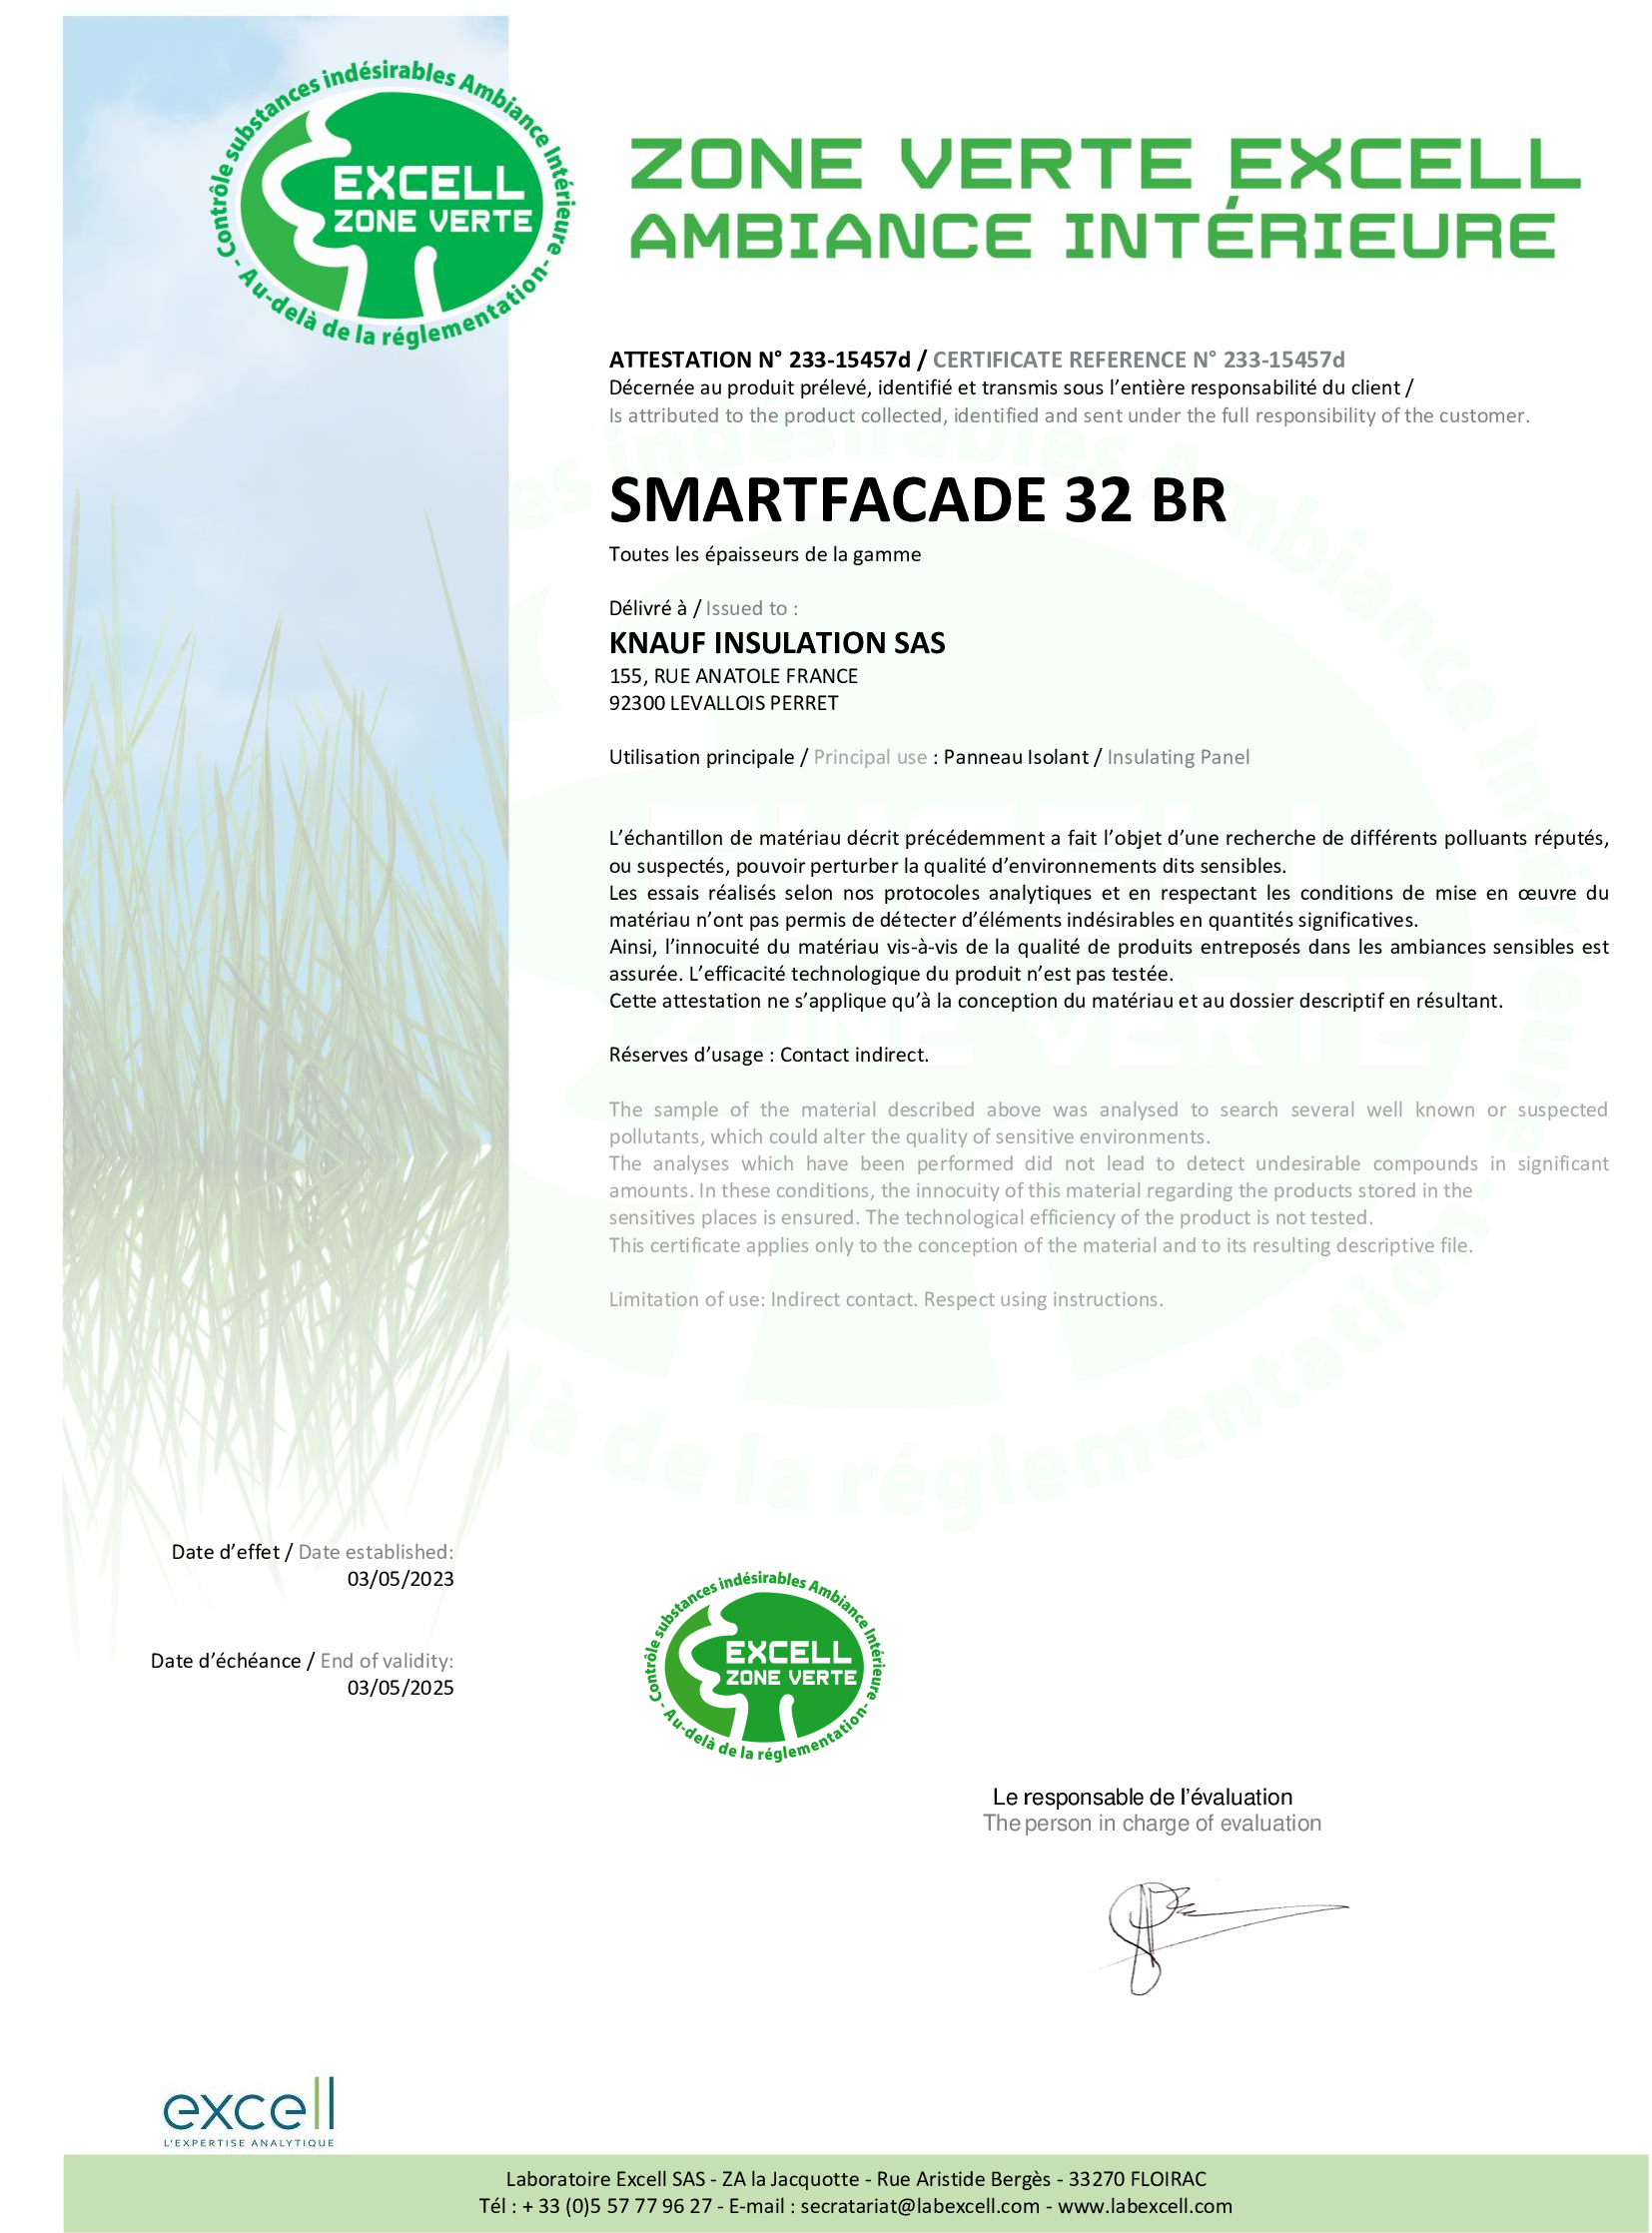 Label Excell - Smartfacade 32 BR